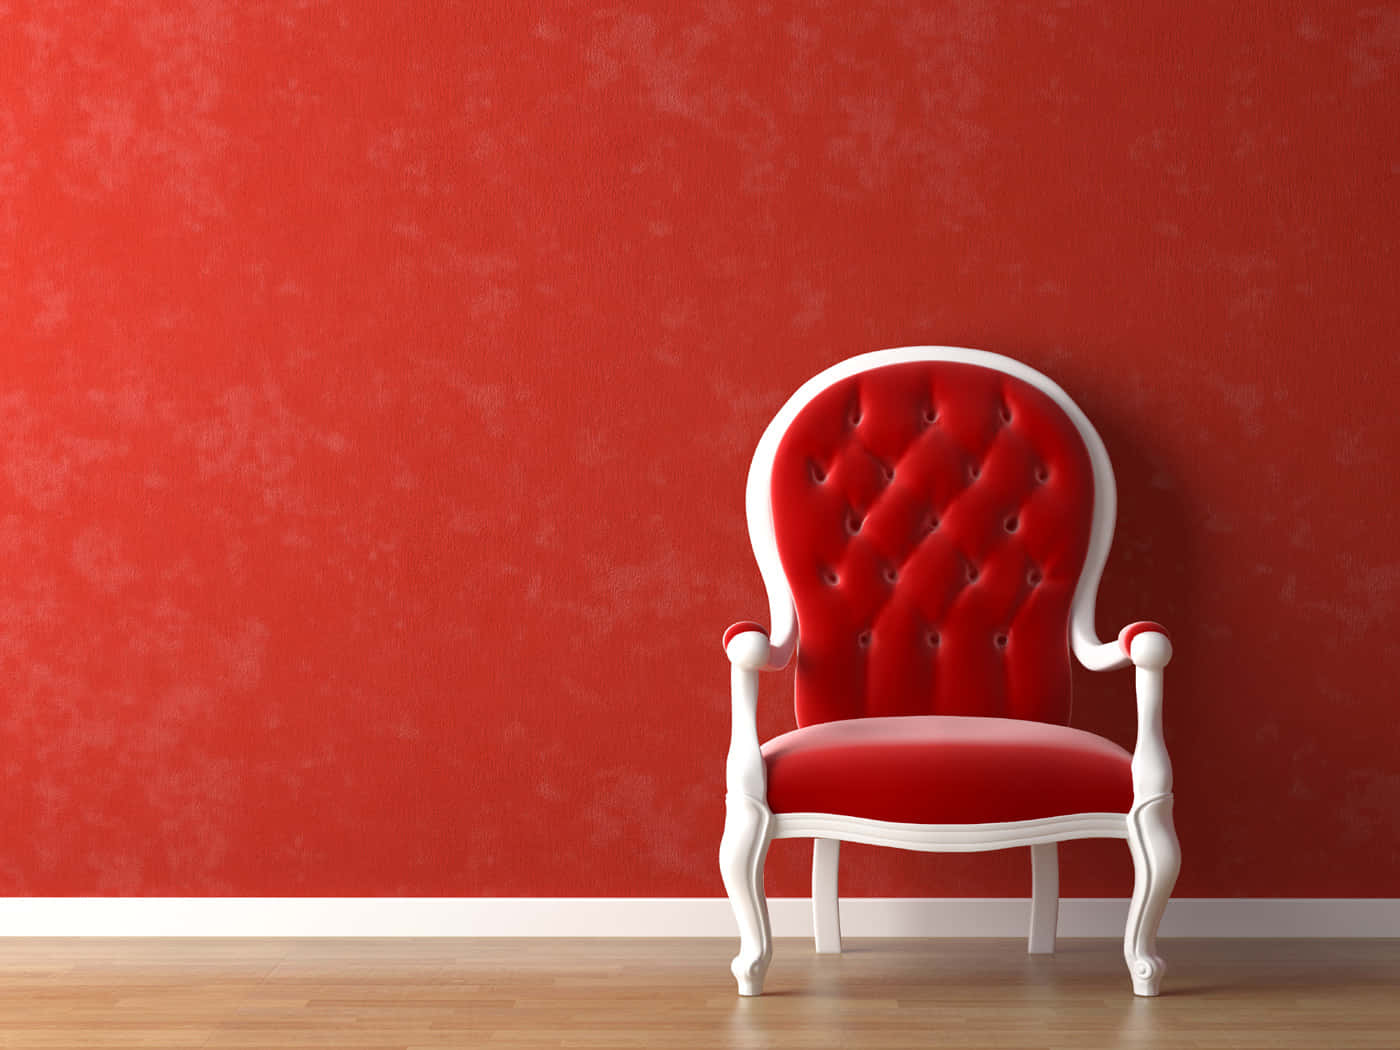 Rød og hvid Bergere stol i traditionel studie Wallpaper